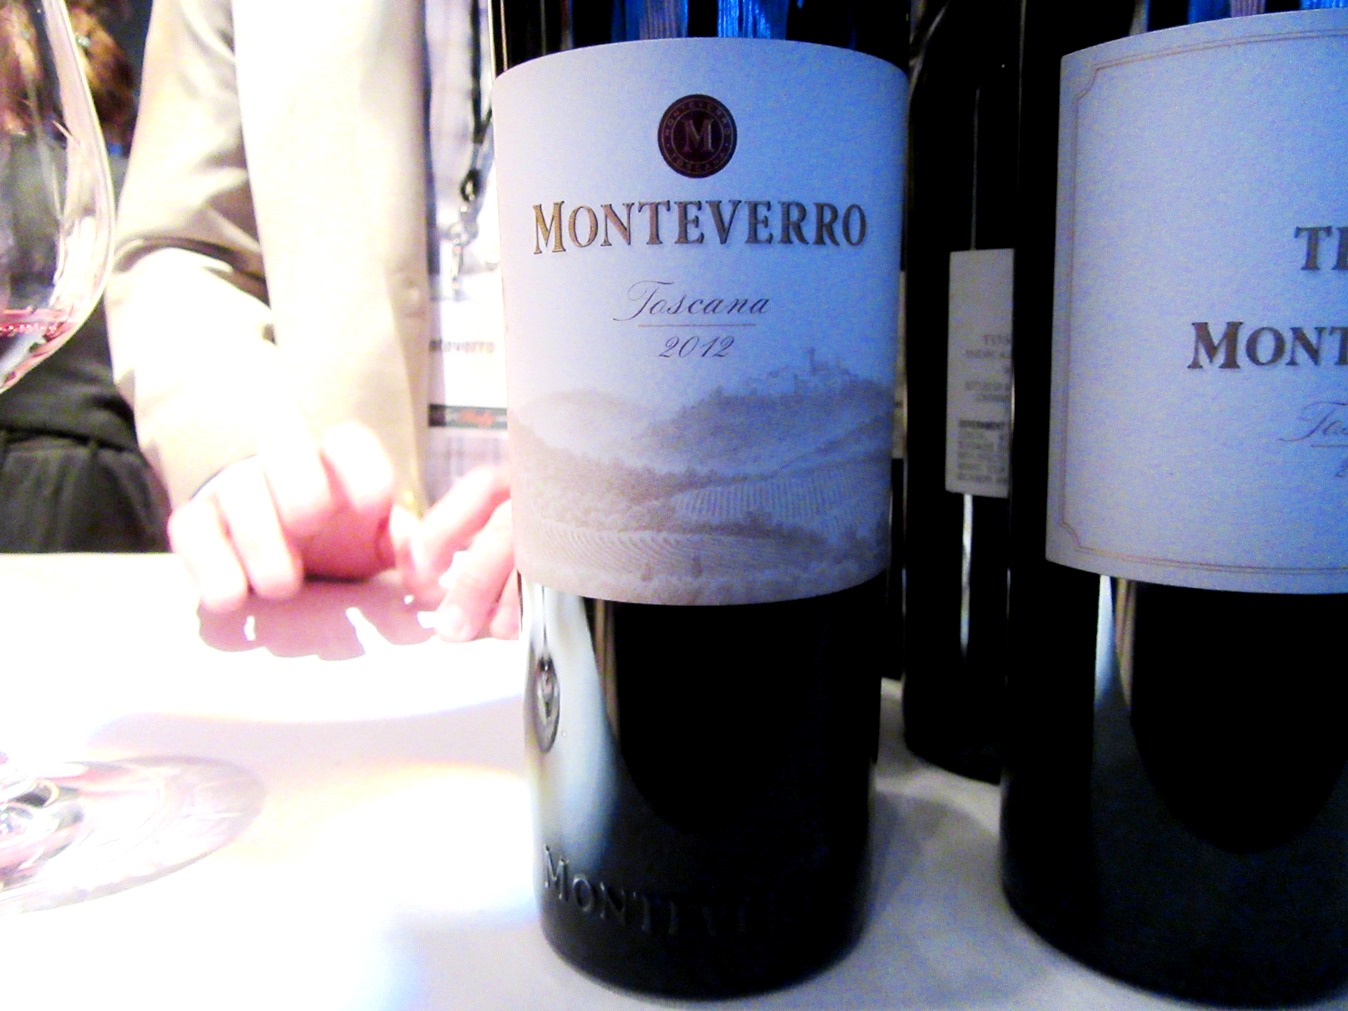 Monteverro, Toscana 2012, Tuscany, Italy, Wine Casual